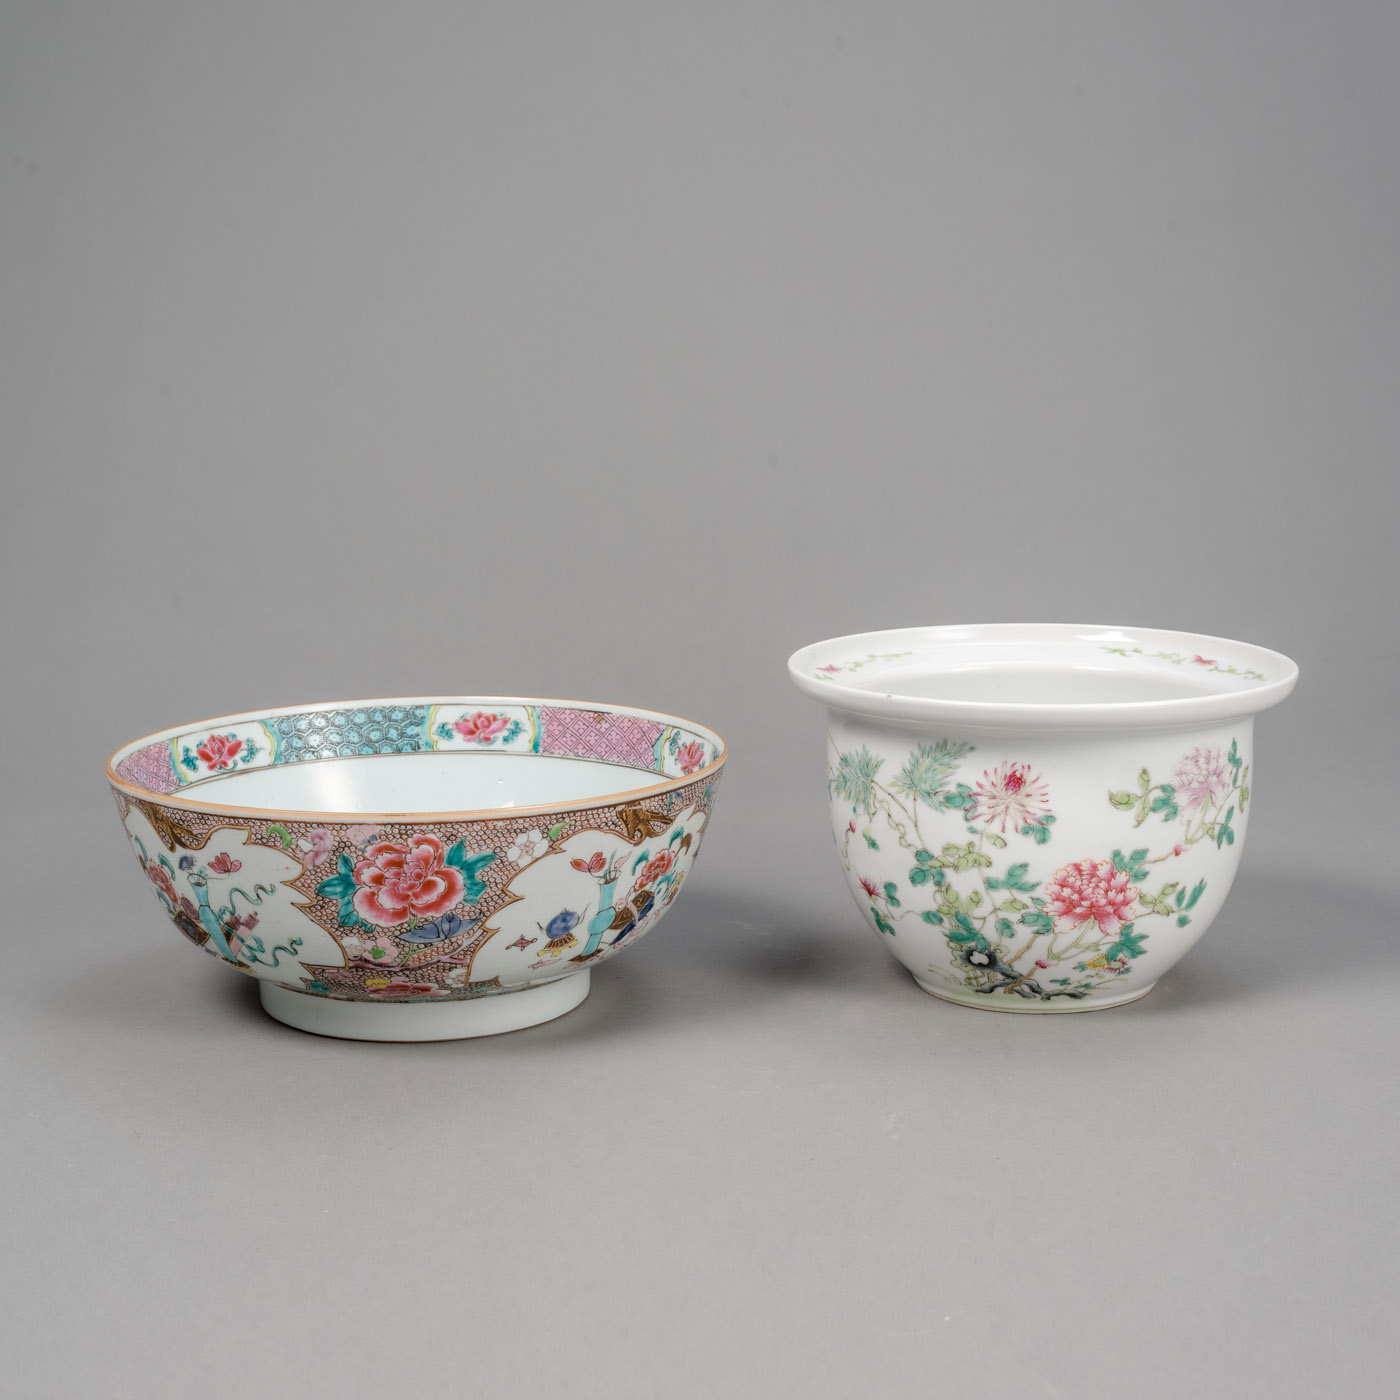 <b>'Famille rose'-Bowlenschüssel aus Porzellan und floral dekorierter Cachepot</b>